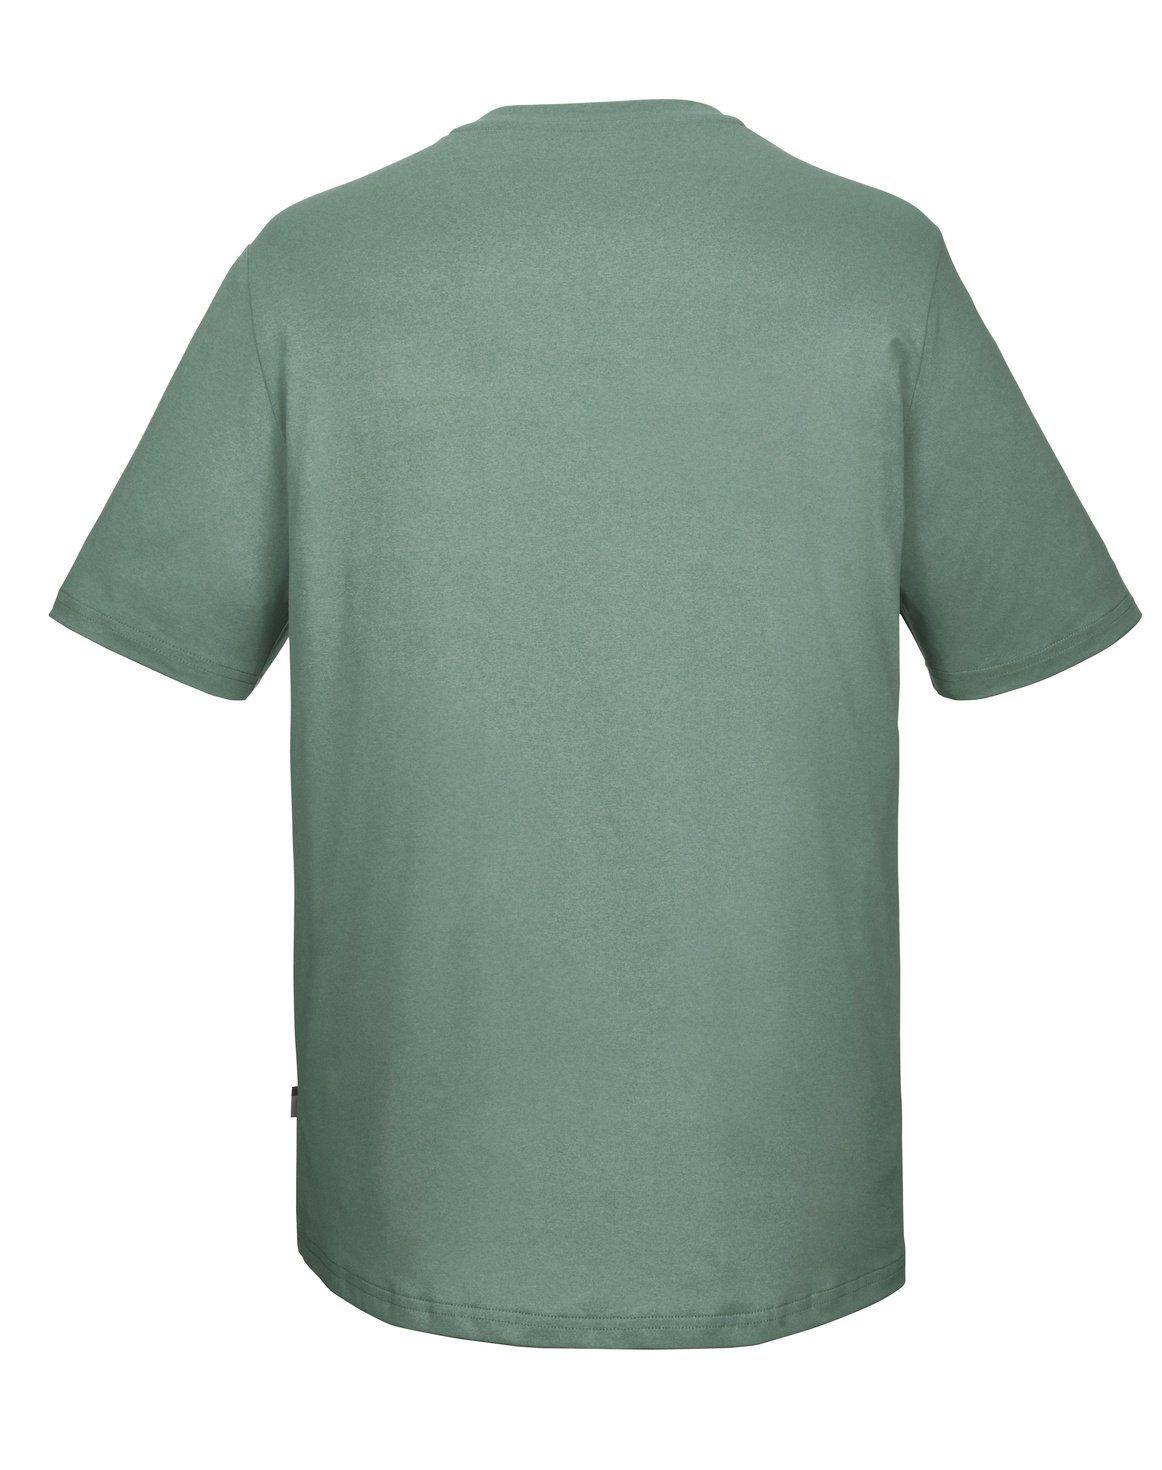 Killtec T-Shirt killtec Herren T-Shirt 97 KOS grüngrau Adult